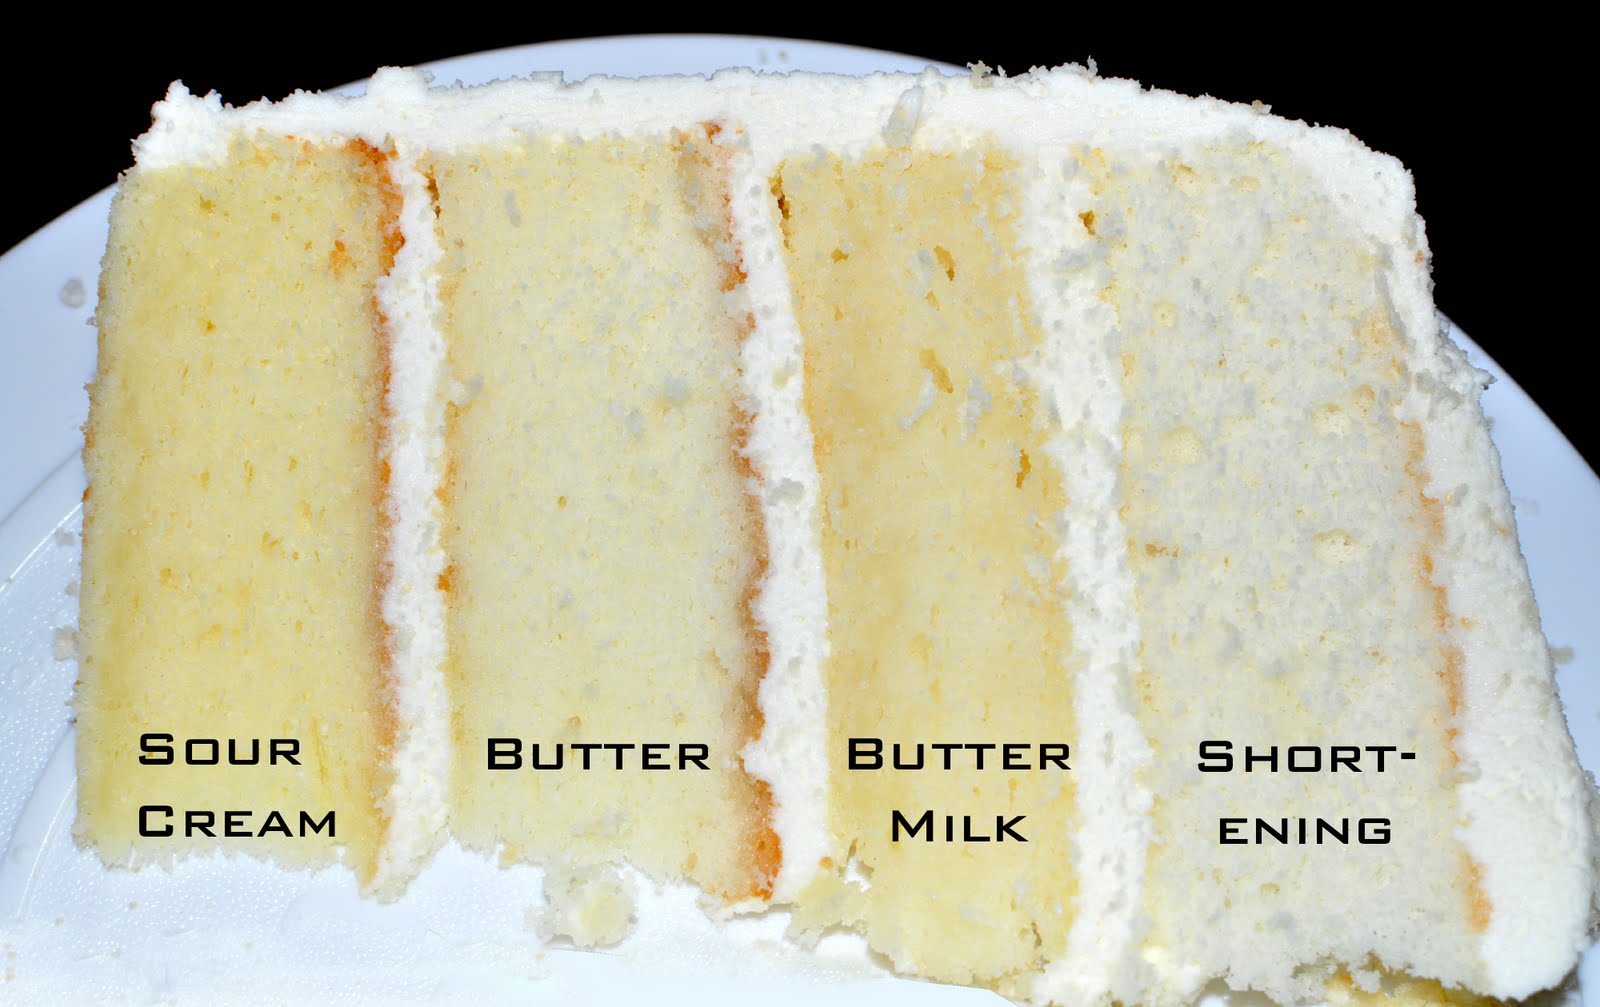 The Bake More White  Cake  Taste Test